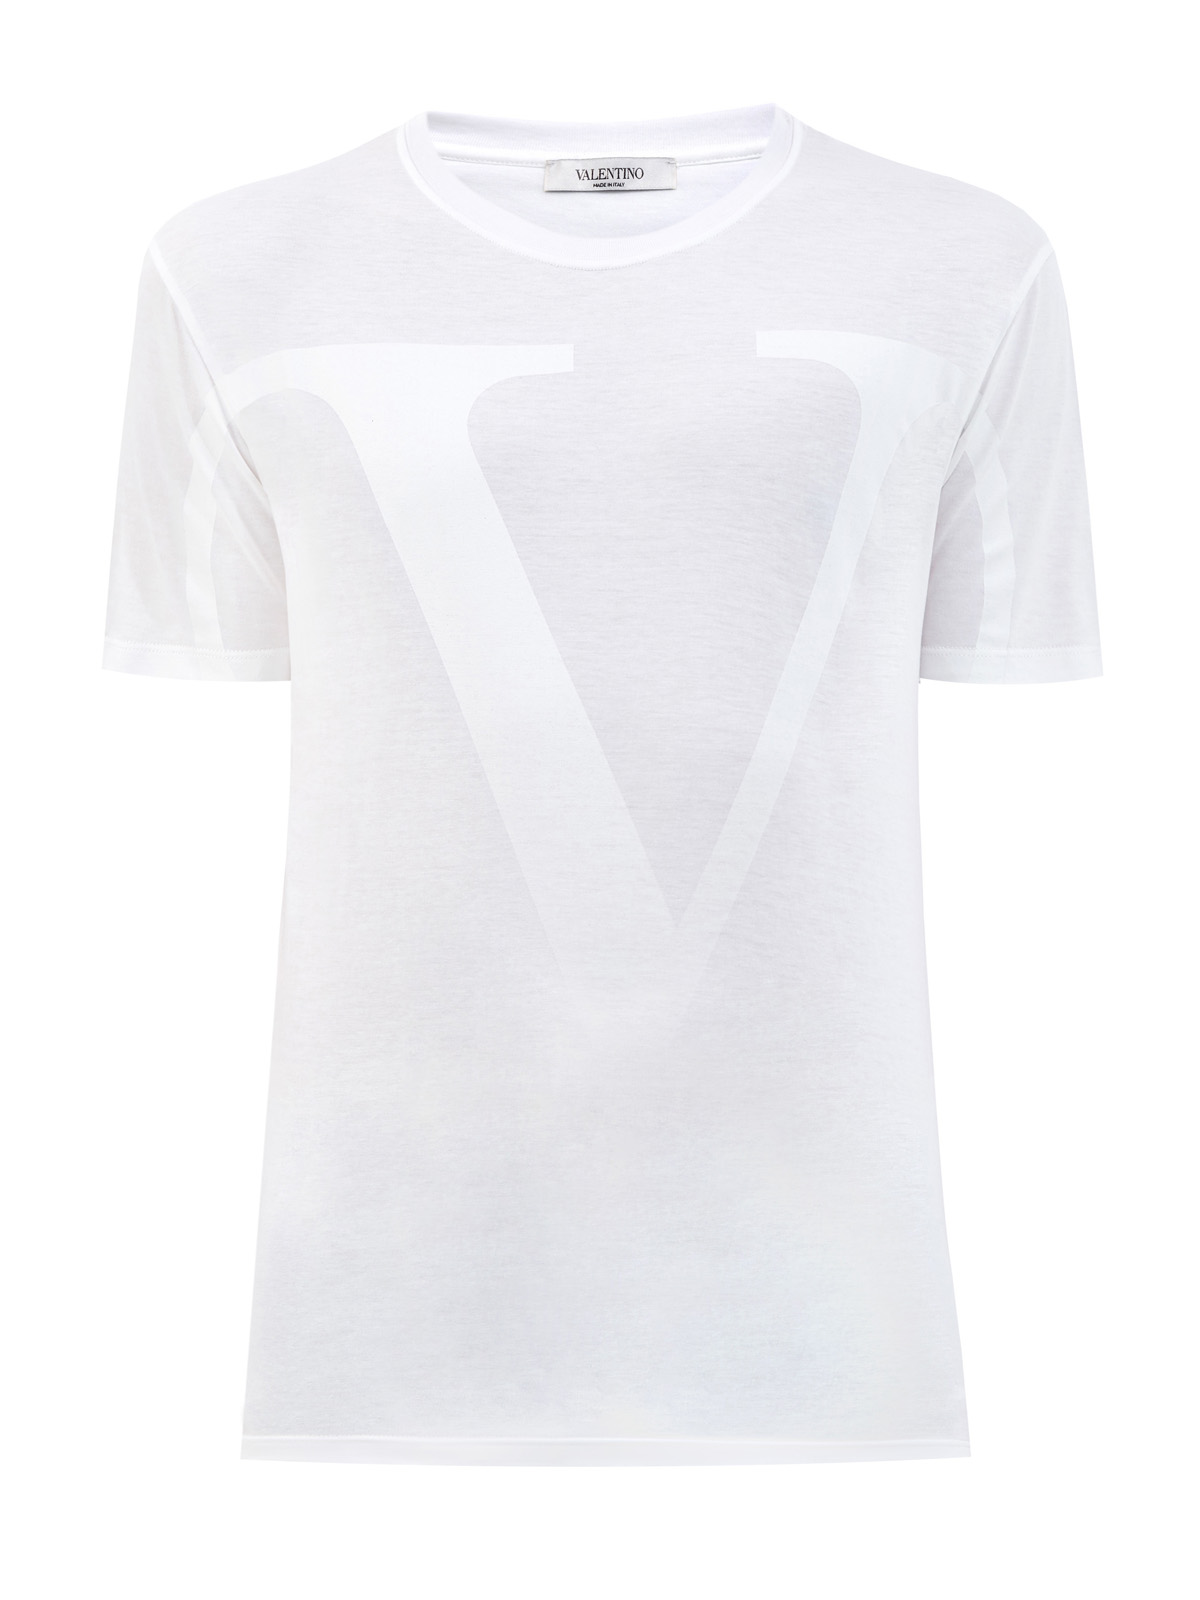 Хлопковая футболка с макро-принтом VLOGO VALENTINO, цвет белый, размер 48;50;52;54 - фото 1